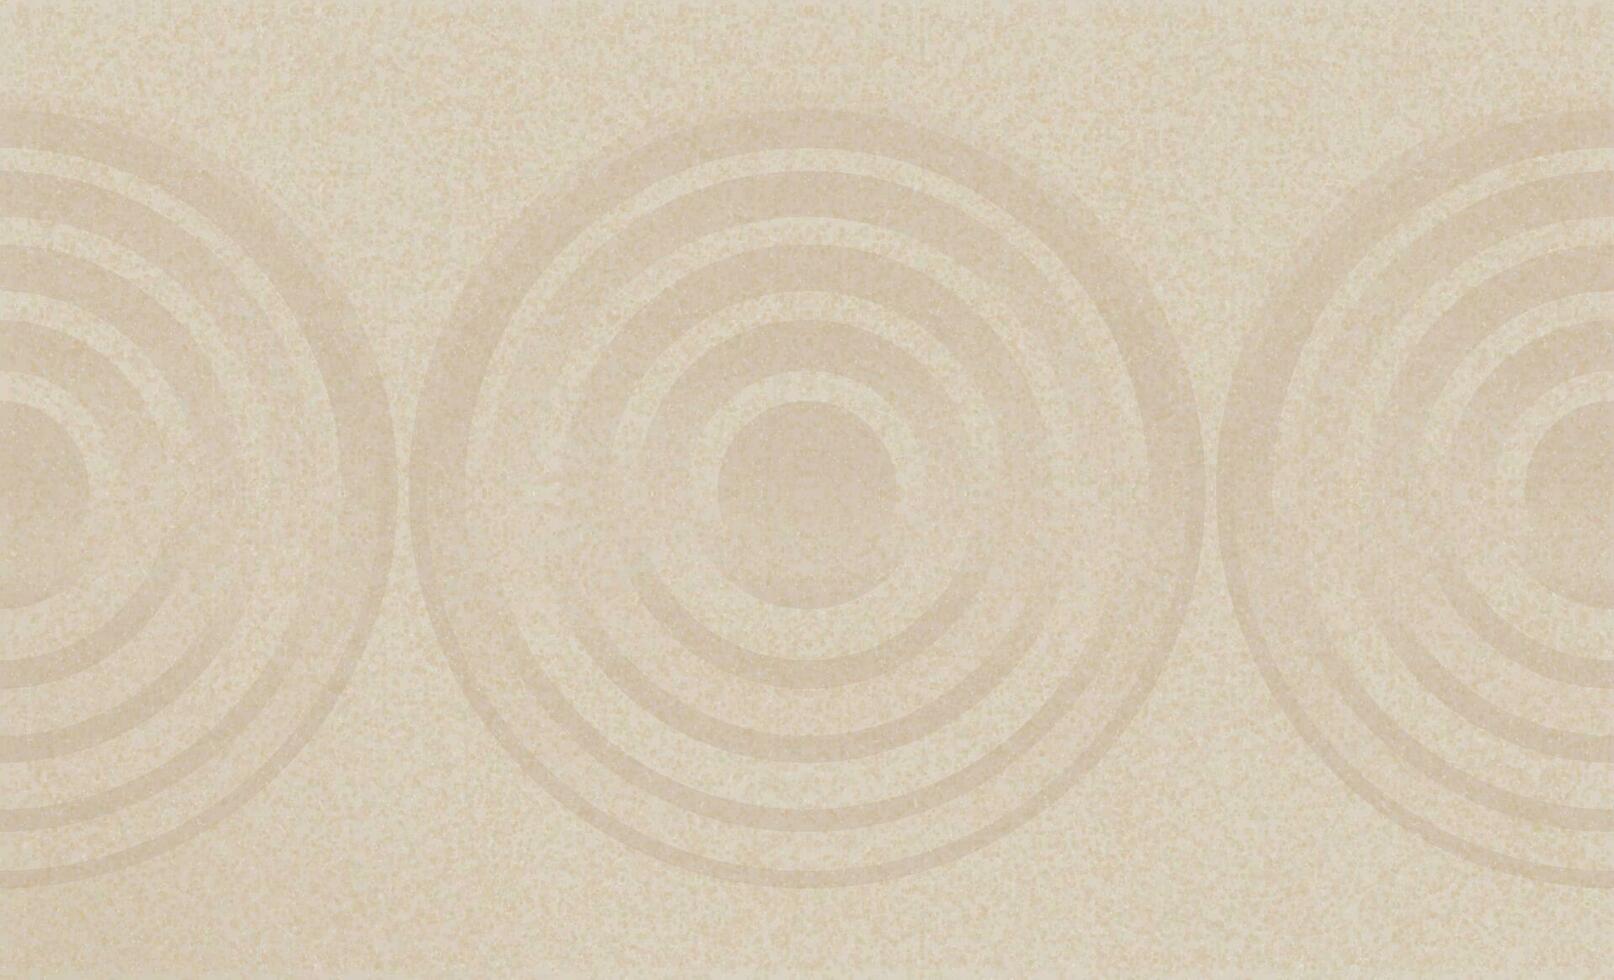 Japans zen tuin met concentrisch cirkels en parallel lijnen Aan bruin zand oppervlakte achtergrond, zand structuur met gemakkelijk geestelijk patronen, harmonie, meditatie, zen Leuk vinden concept vector